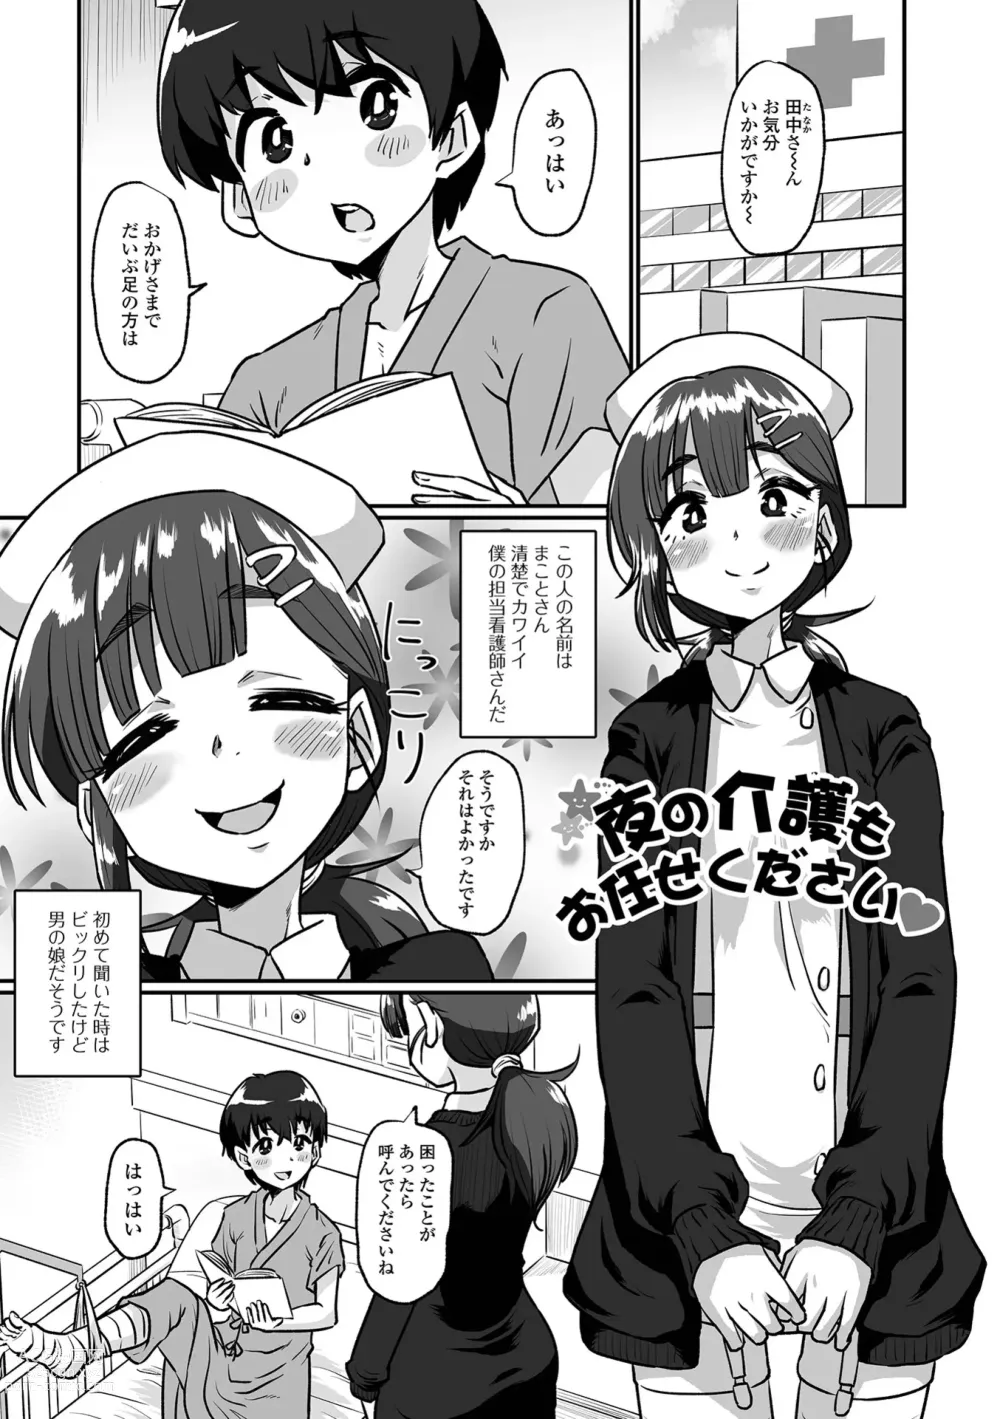 Page 83 of manga Kawaii Otokonoko wa Suki Desuka?